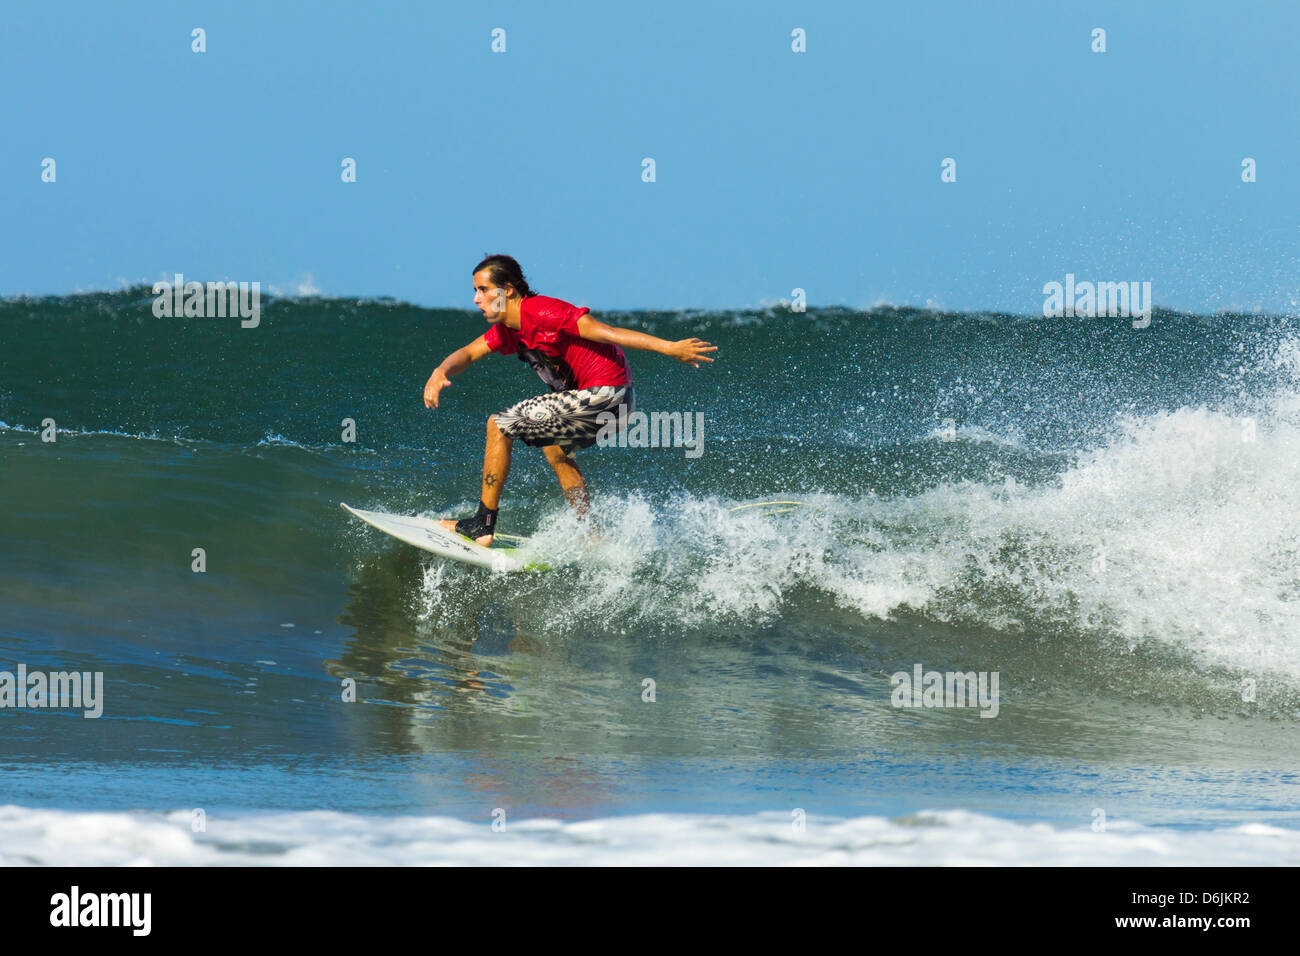 Surfer sur la vague d'équitation shortboard à Playa Guiones populaire plage de surf, Nosara, Péninsule de Nicoya, Province de Guanacaste, Costa Rica Banque D'Images